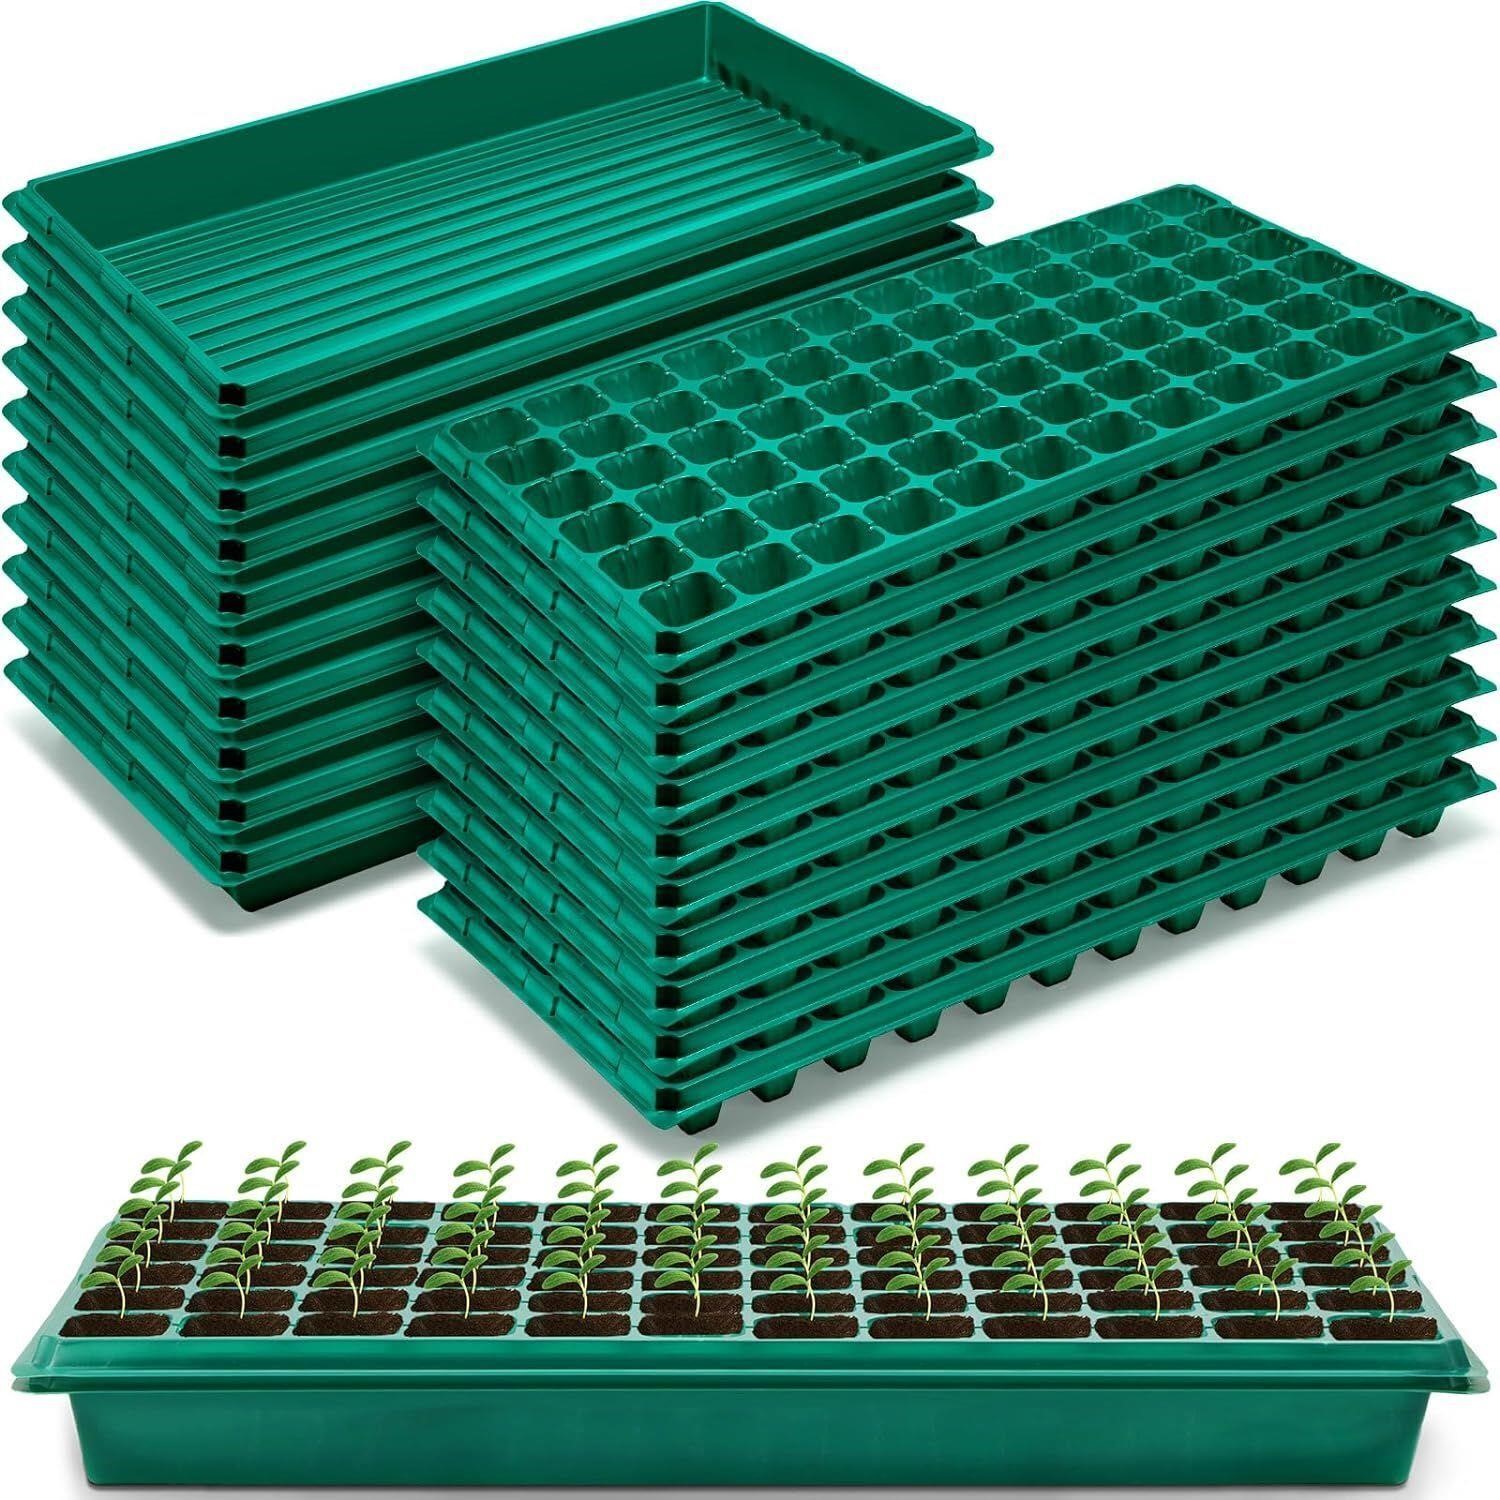 5 Set Seed Starter Kit 72 Cell Seedling Trays